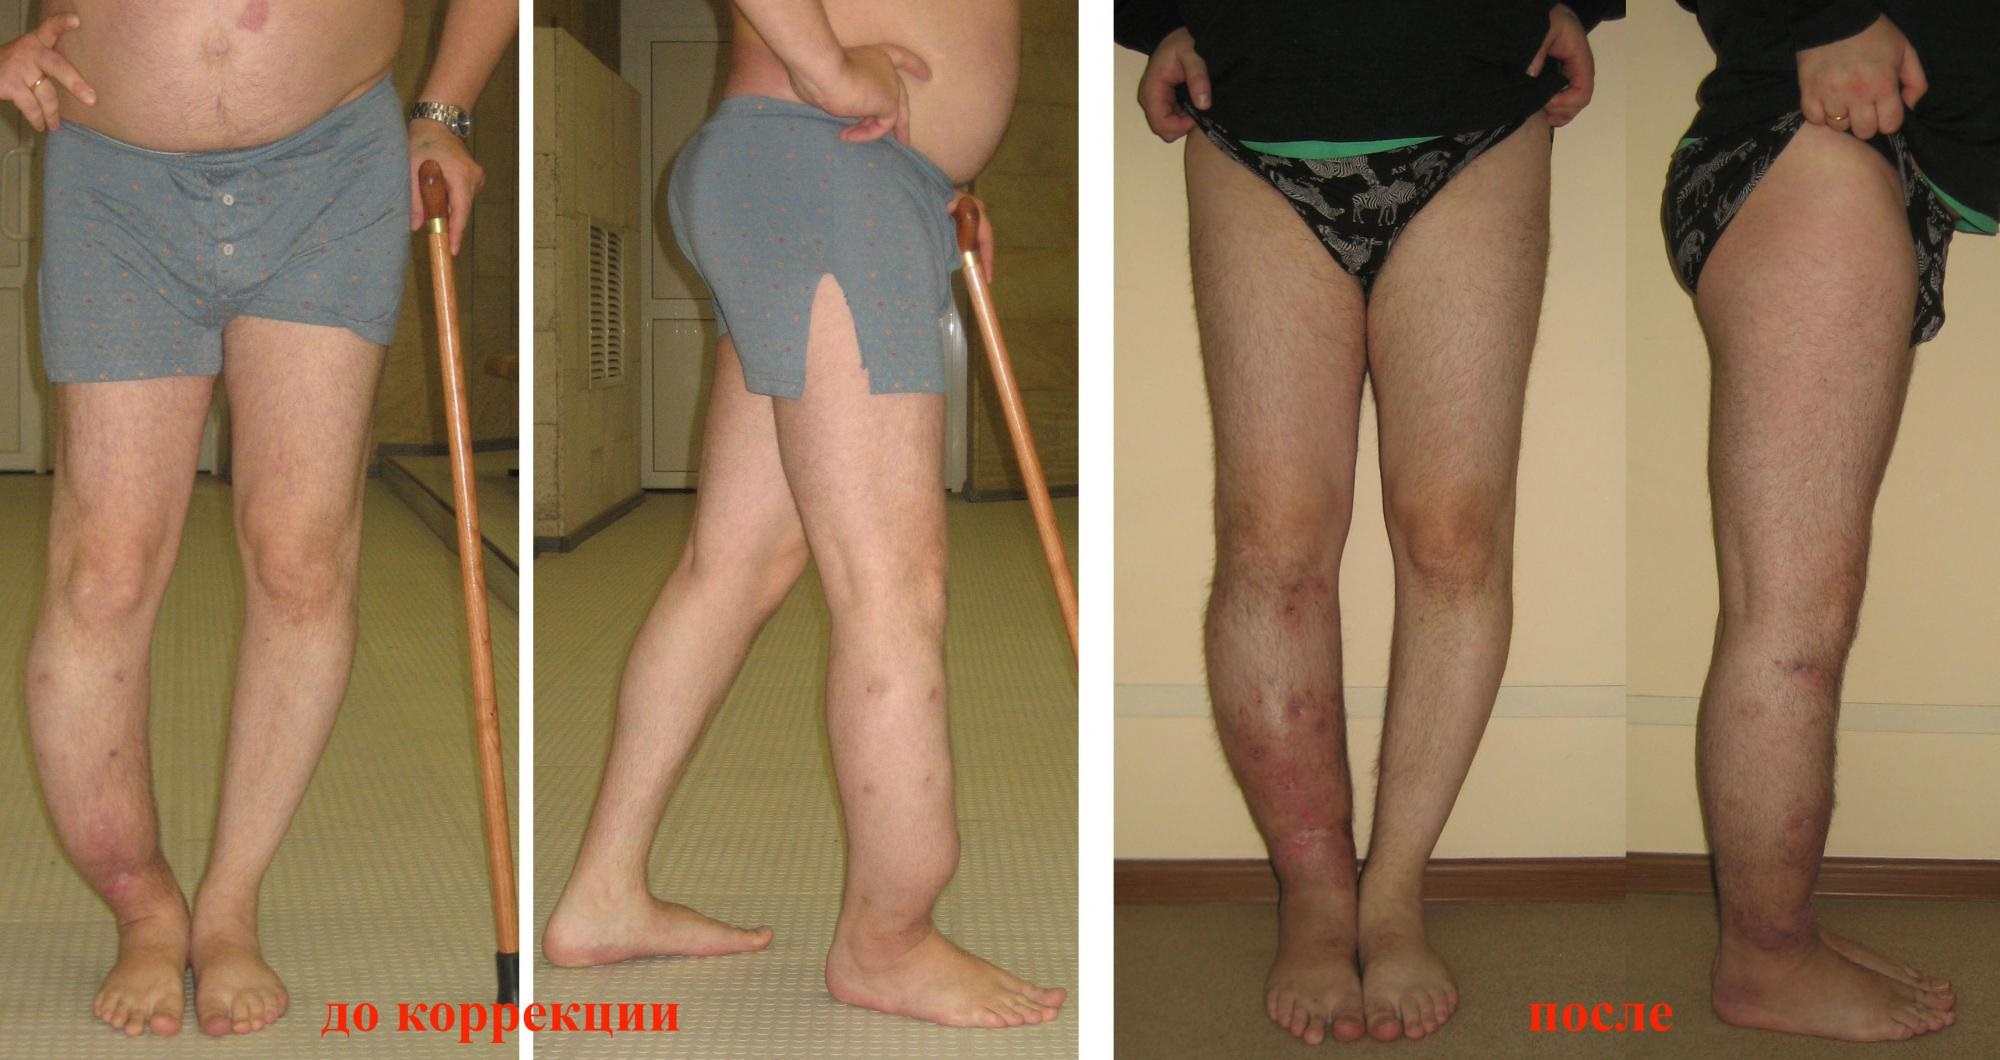 Пациенту сделана вальгизирующая остеотомия. Фото до и после коррекции искривления голеней